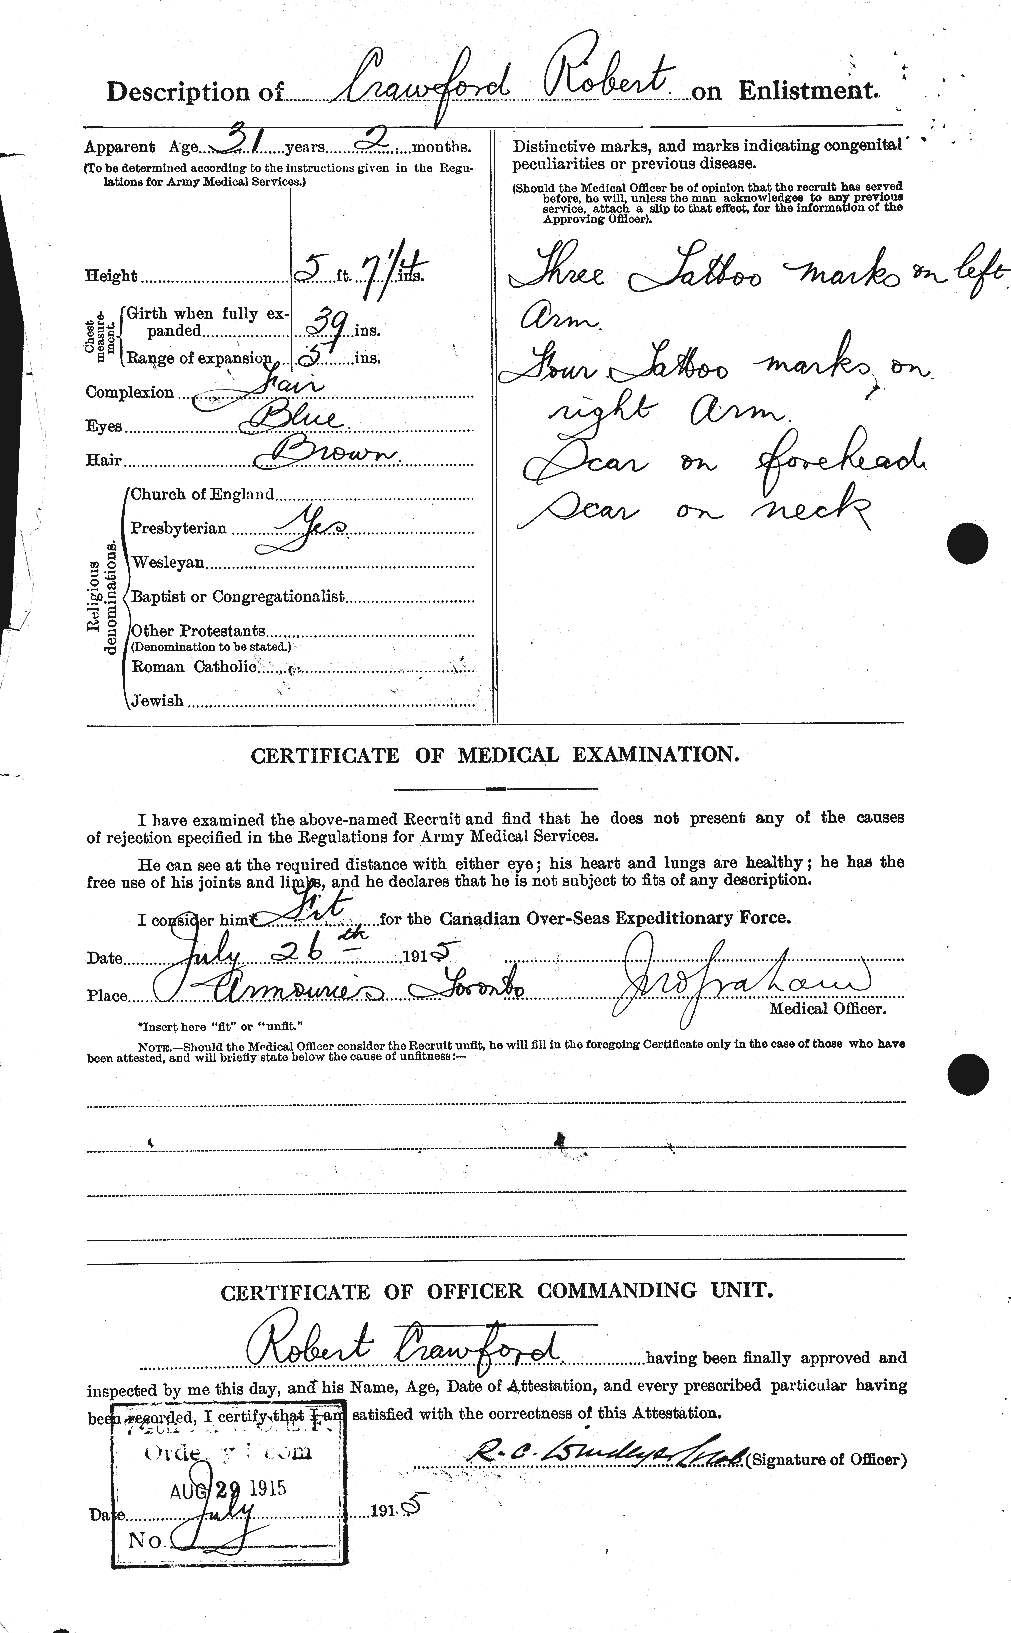 Dossiers du Personnel de la Première Guerre mondiale - CEC 061635b